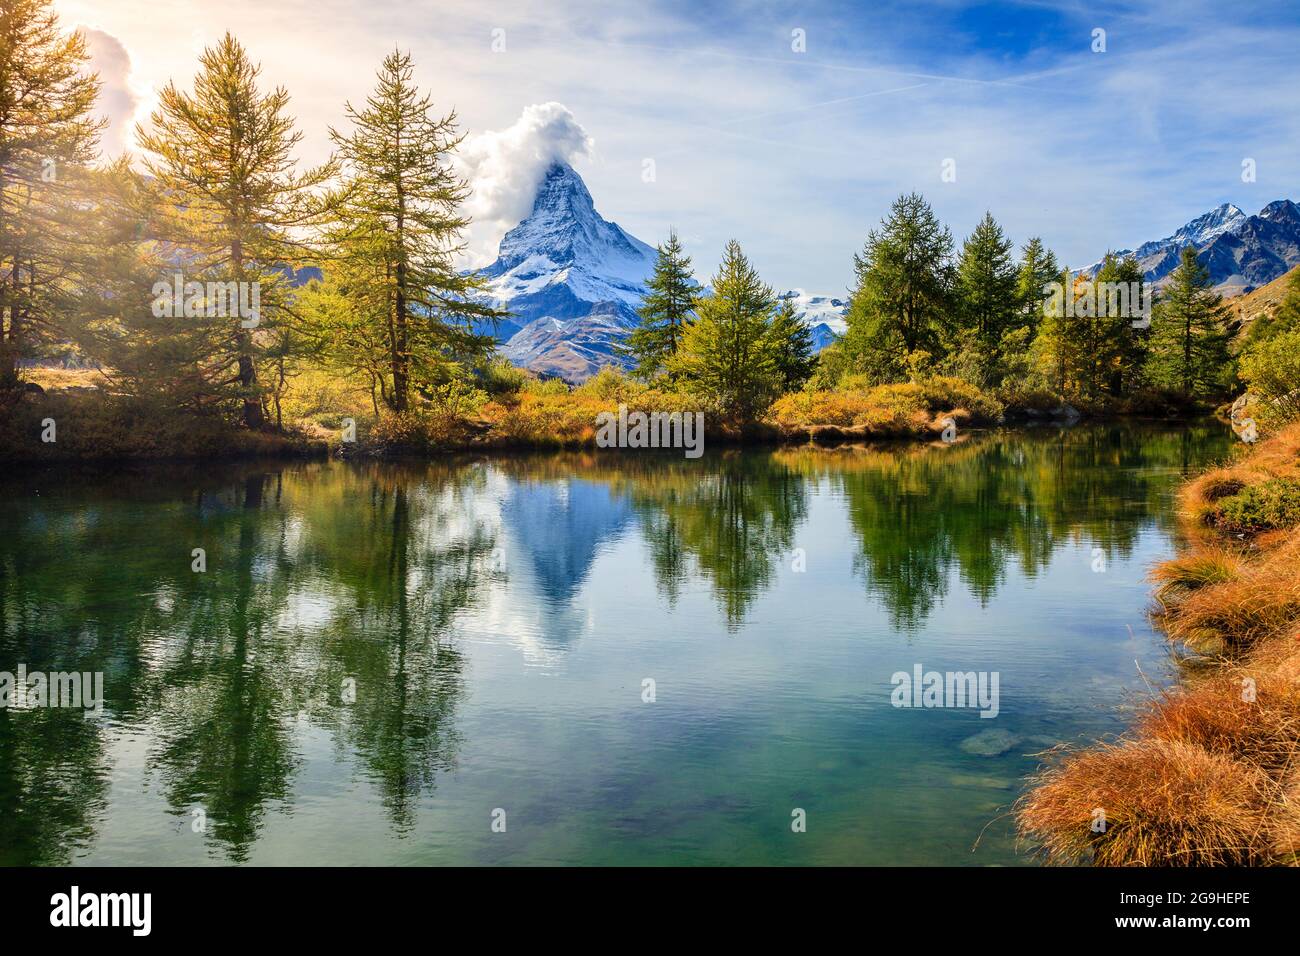 Der berühmte Berggipfel Matterhorn spiegelte sich in einem Teich in den Schweizer Alpen wider Stockfoto